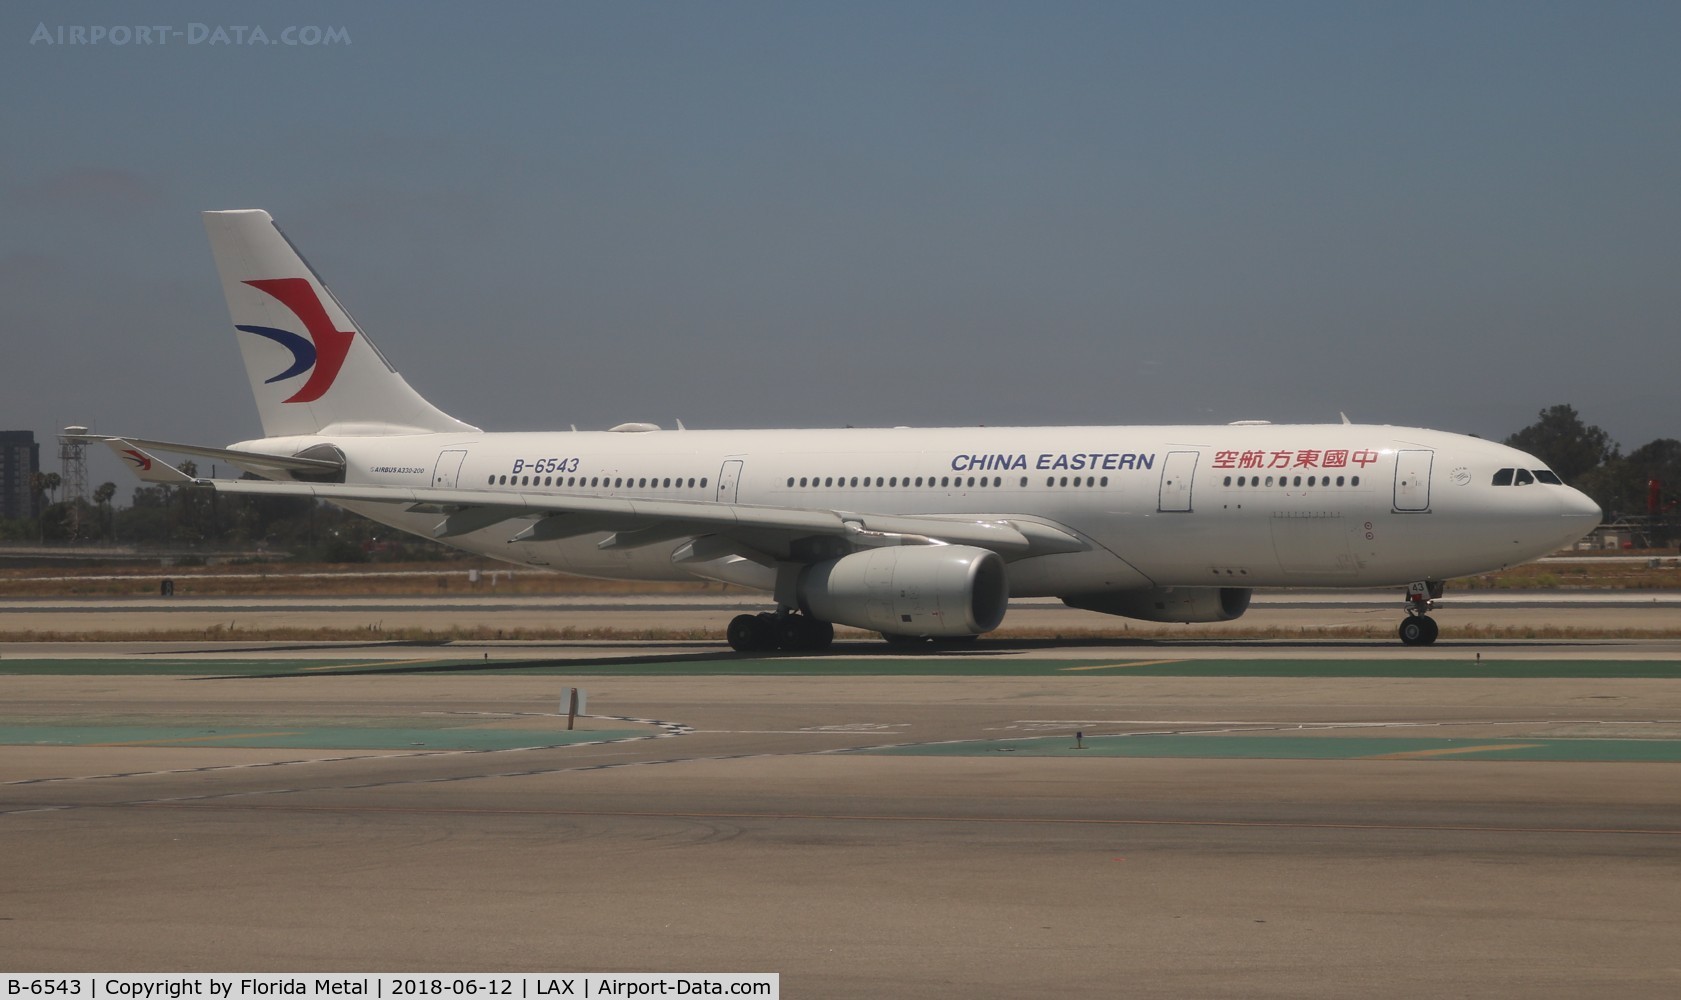 B-6543, 2011 Airbus A330-243 C/N 1280, China Eastern